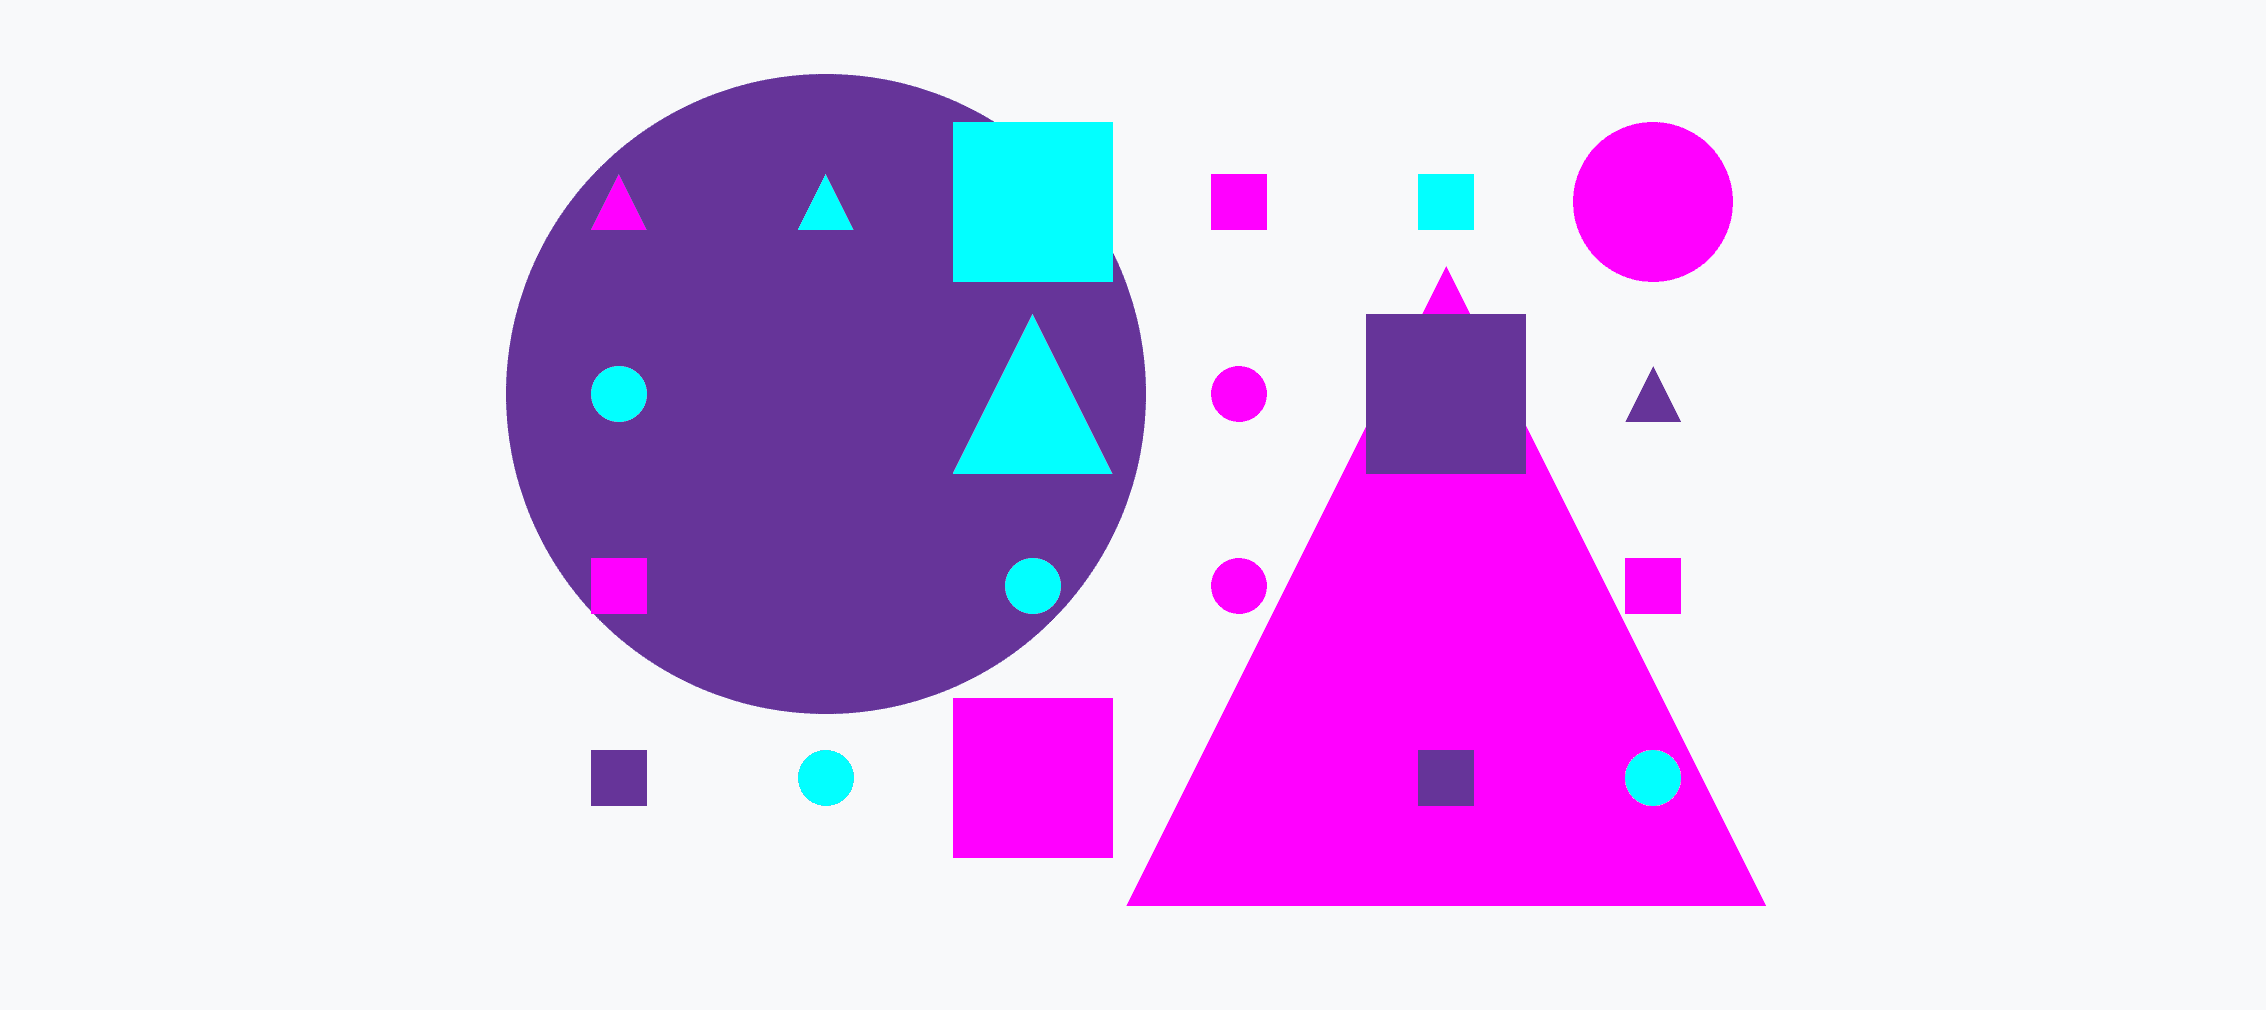 Grille colorée composée de petits et de grands cercles, de triangles et de carrés.